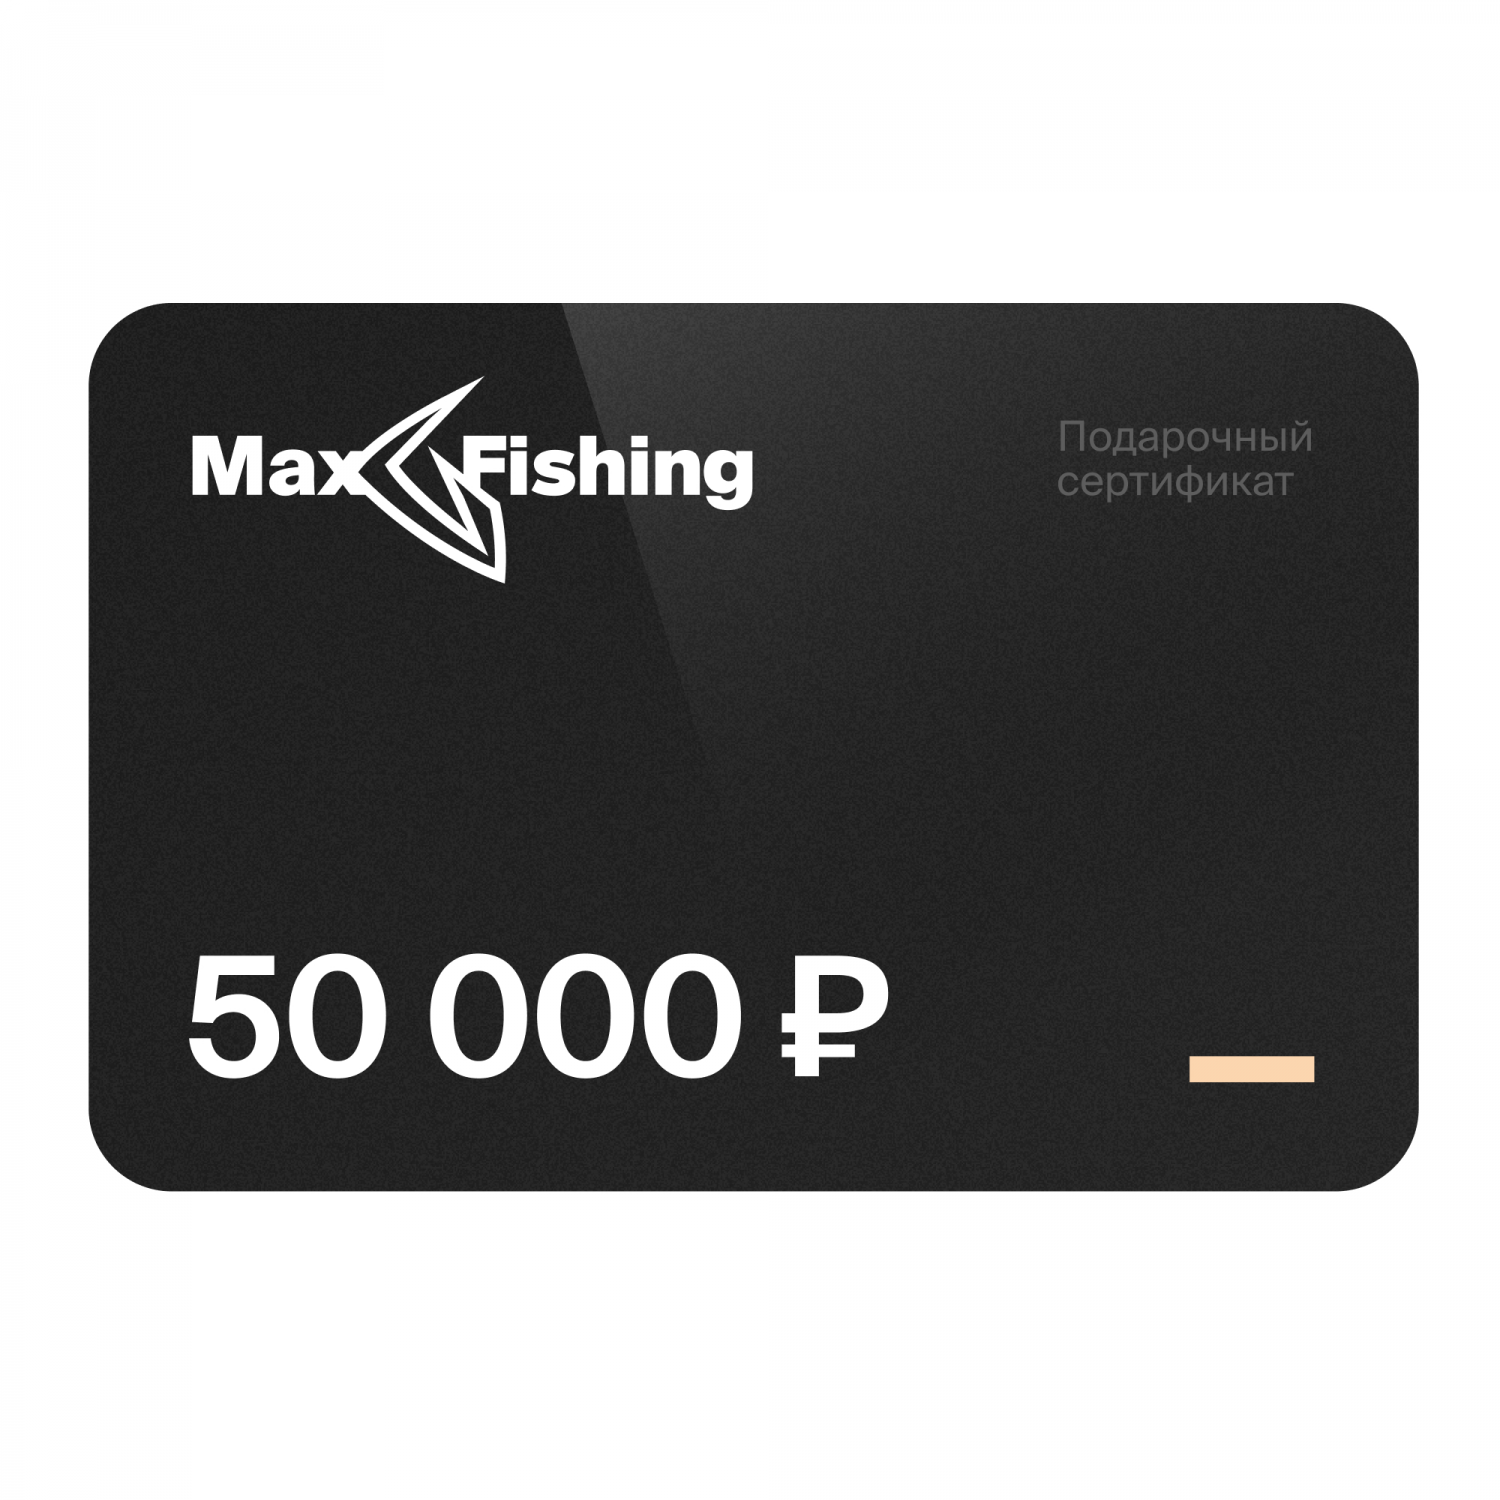 Подарочный сертификат MaxFishing 50 000 ₽ подарочный сертификат maxfishing 5